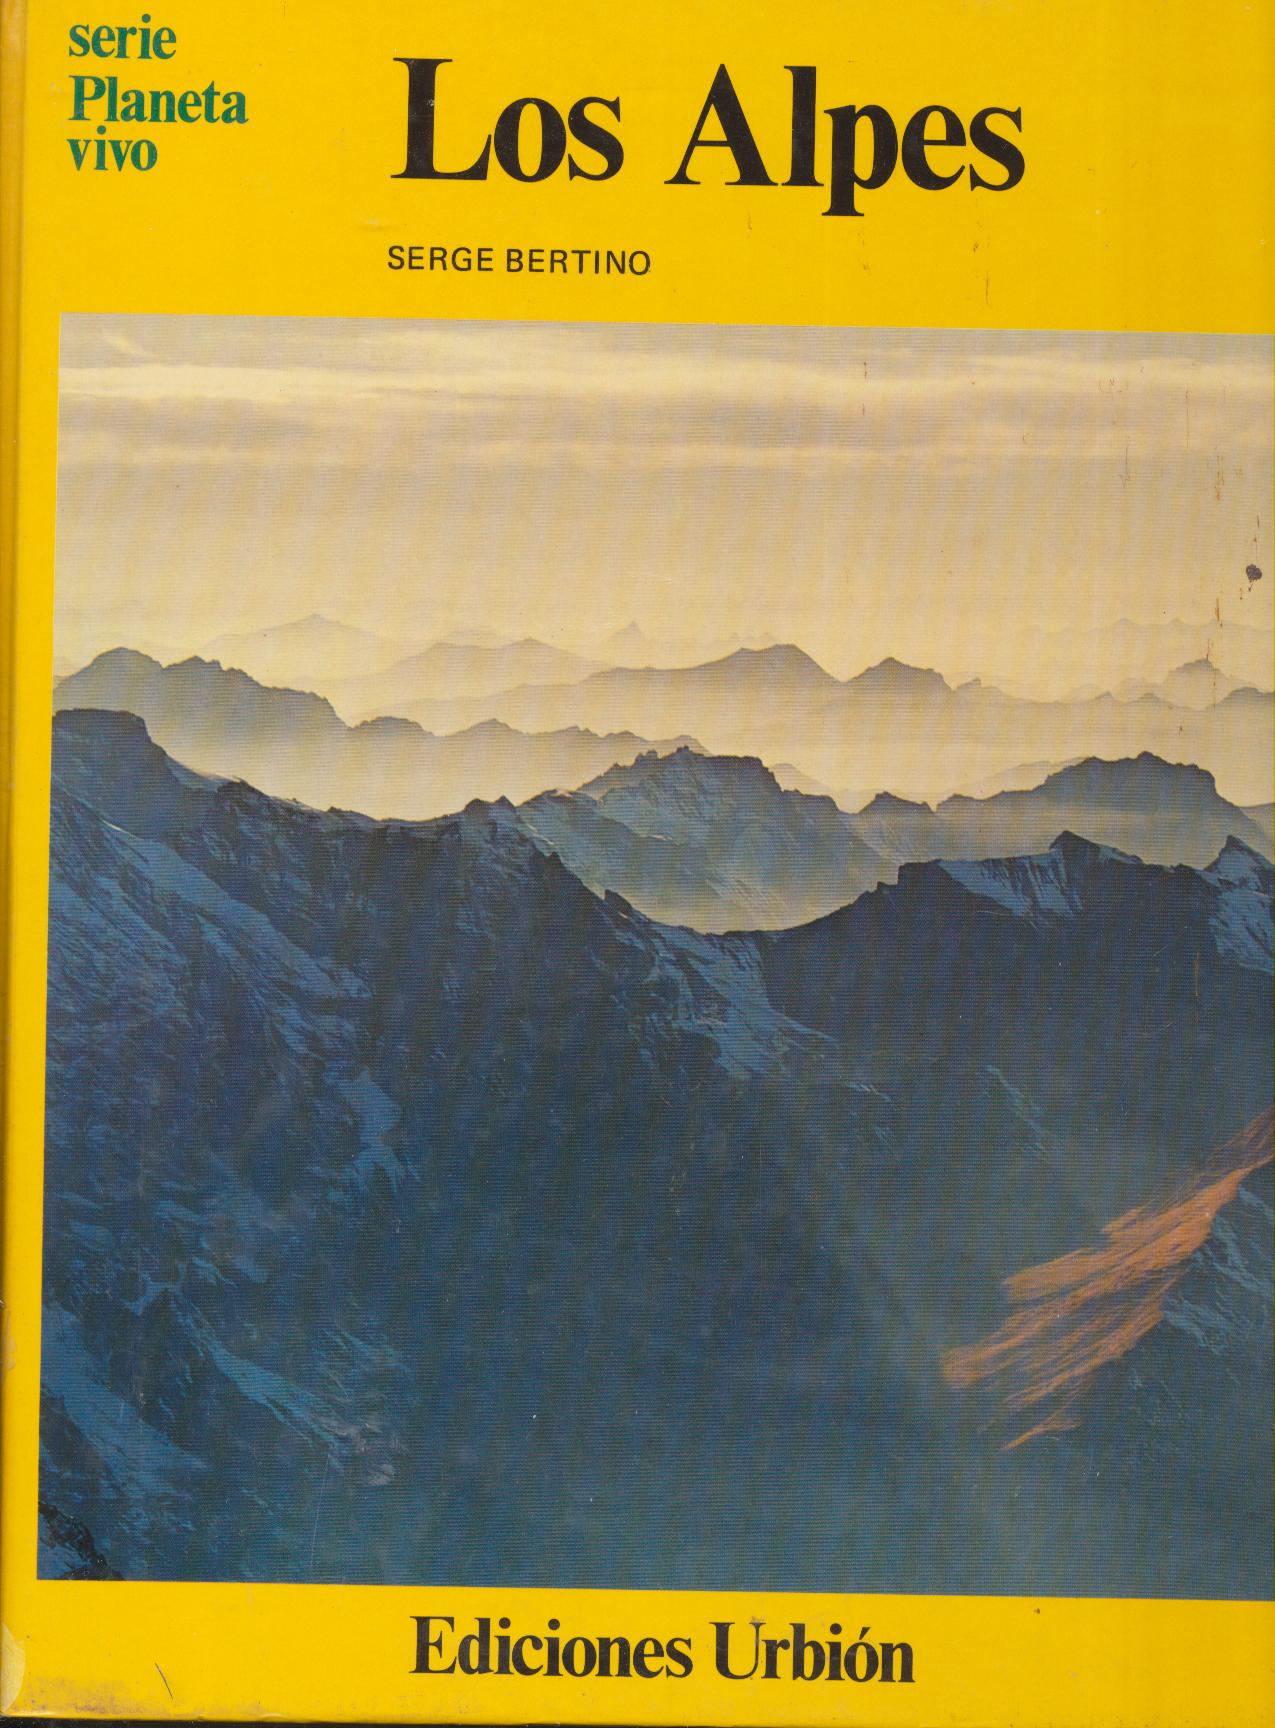 Serie Planeta Vivo. Los Alpes. Serge Bertino. Ediciones Urbión 1977